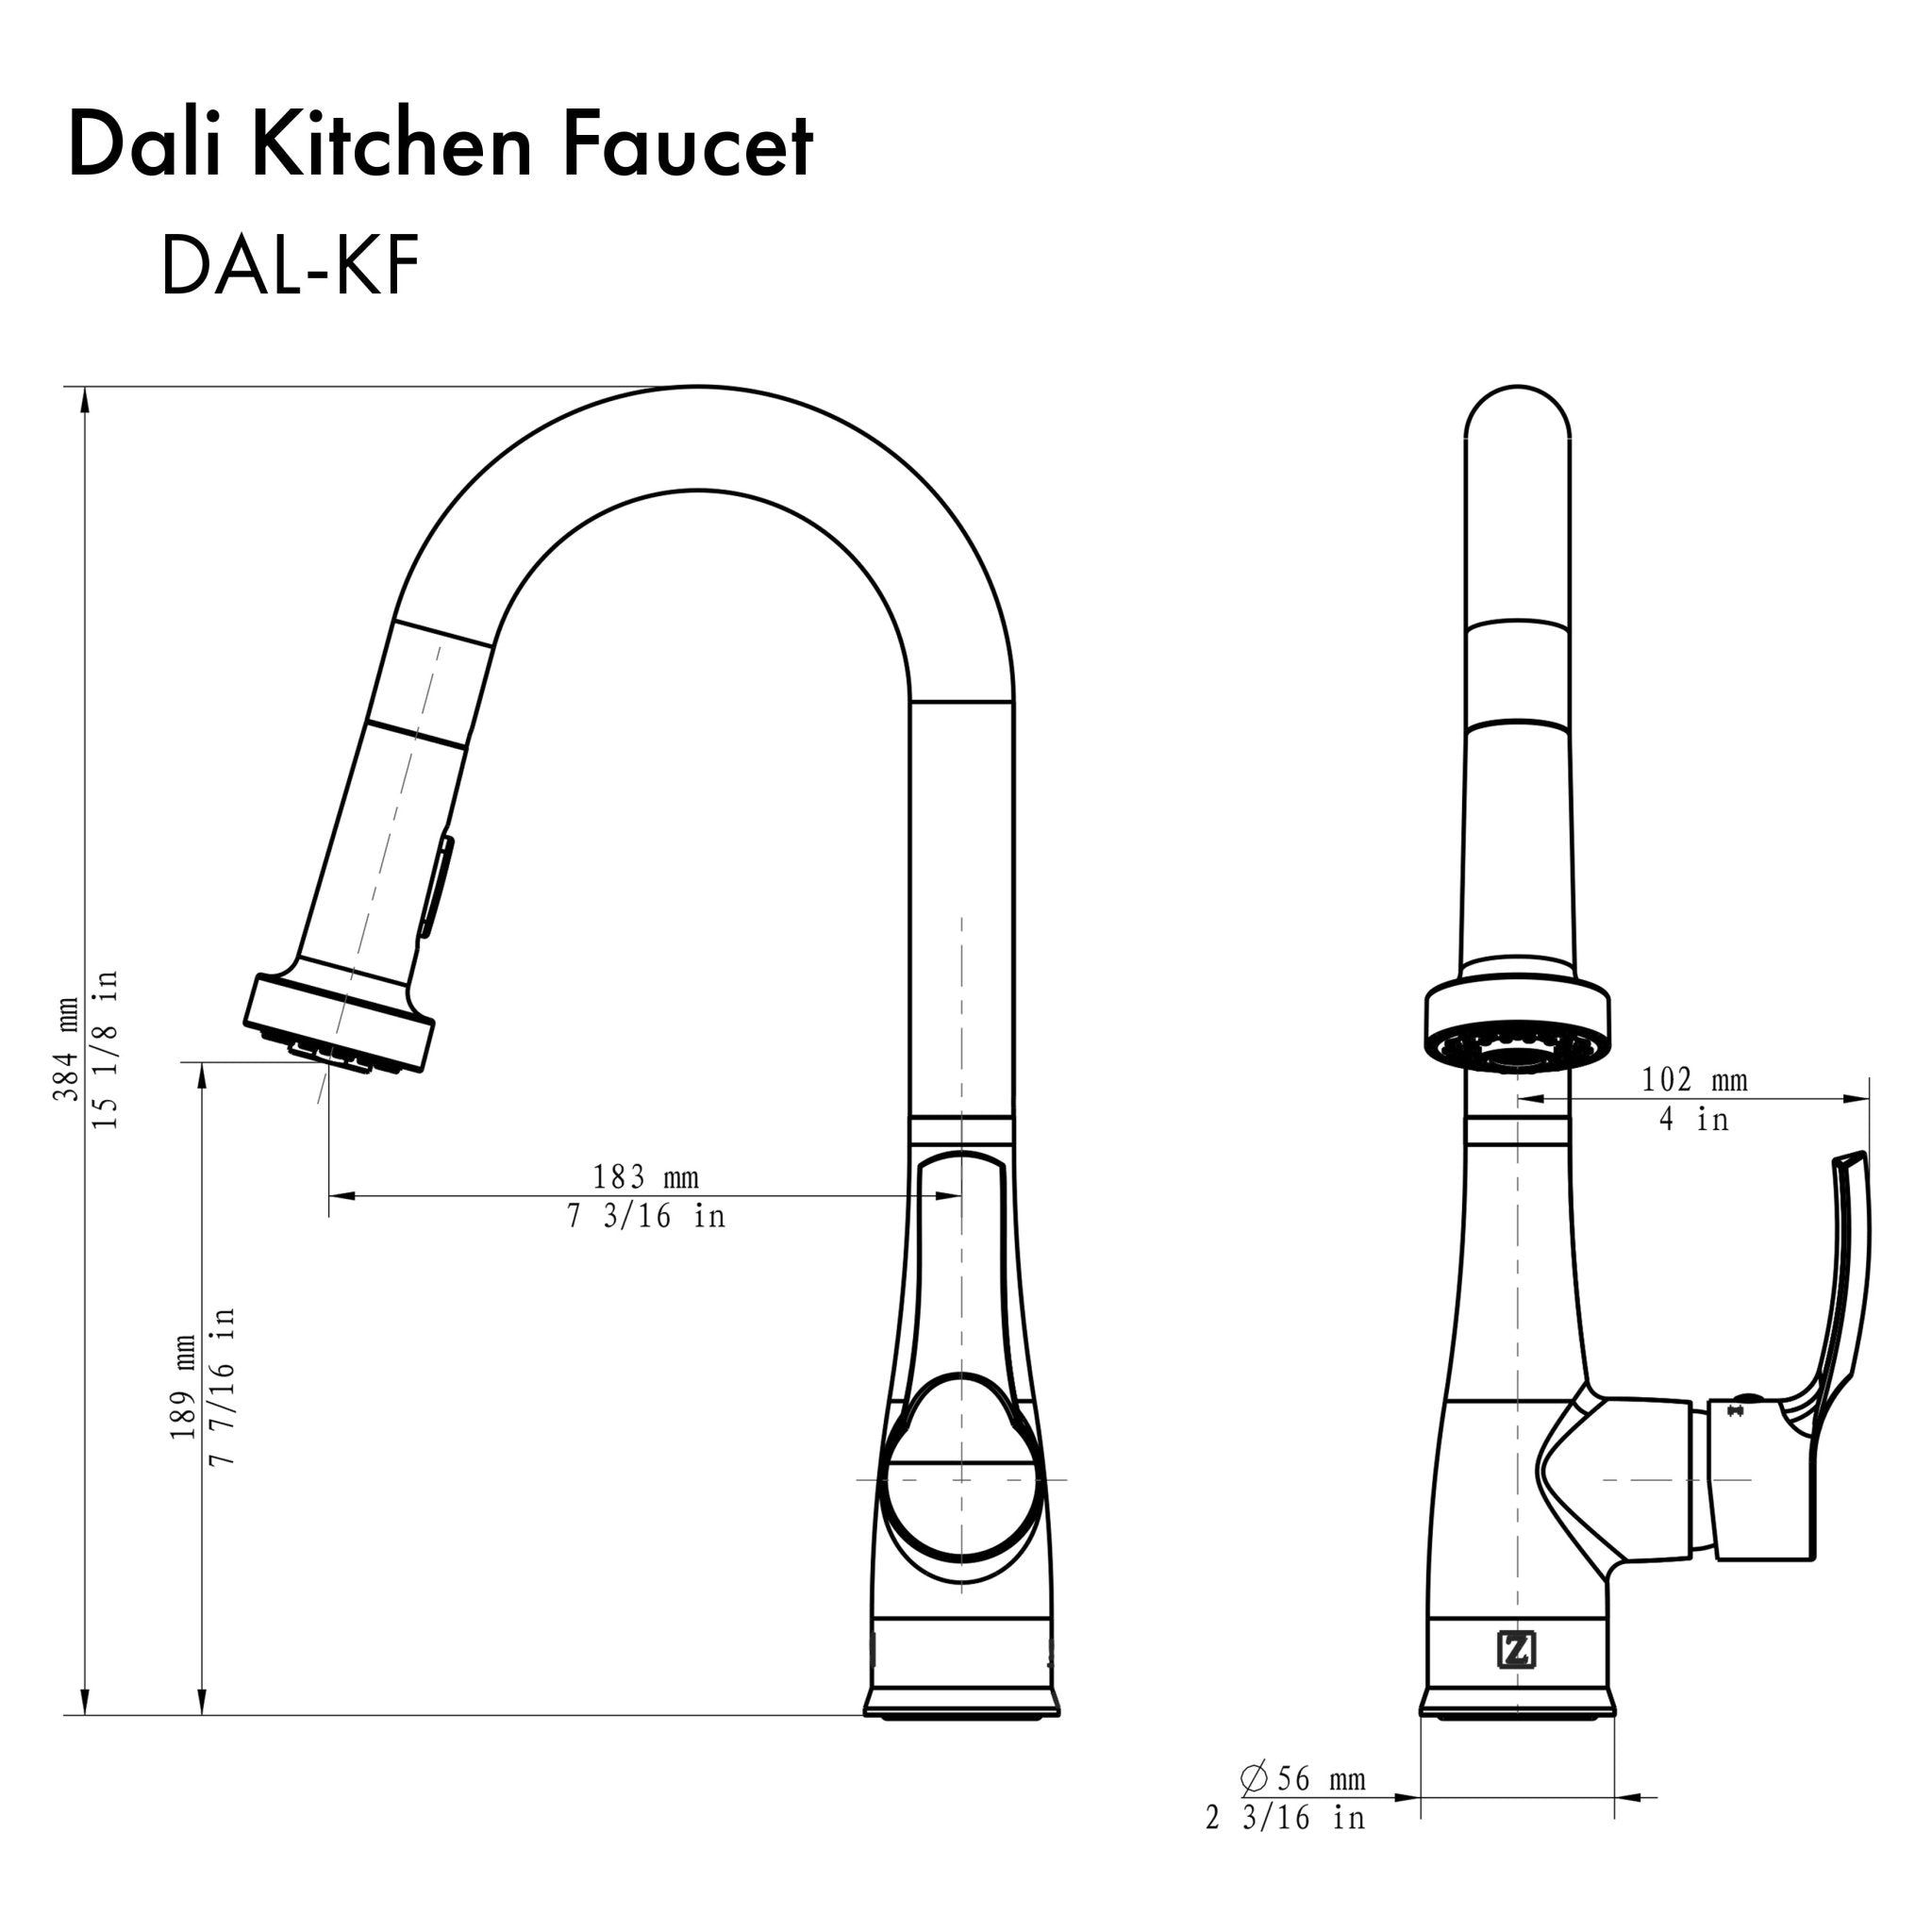 ZLINE Dali Kitchen Faucet - DAL-KF